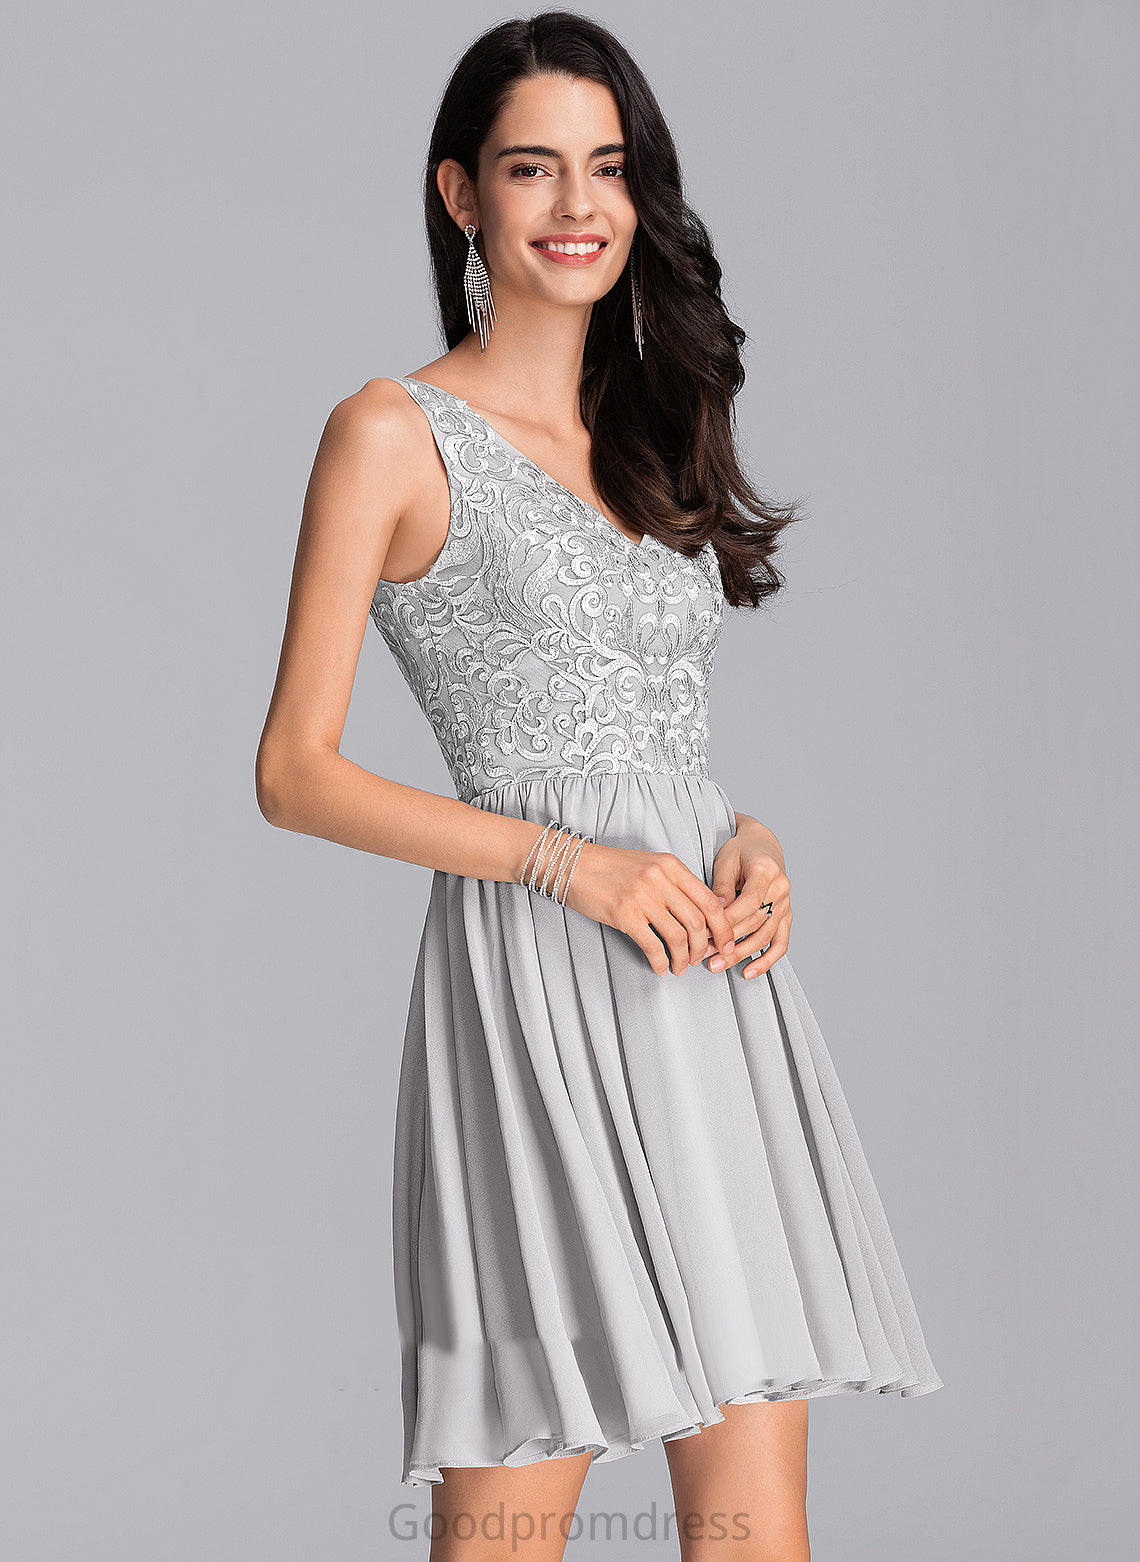 Elaine Camila Bridesmaid Homecoming Dresses Dresses